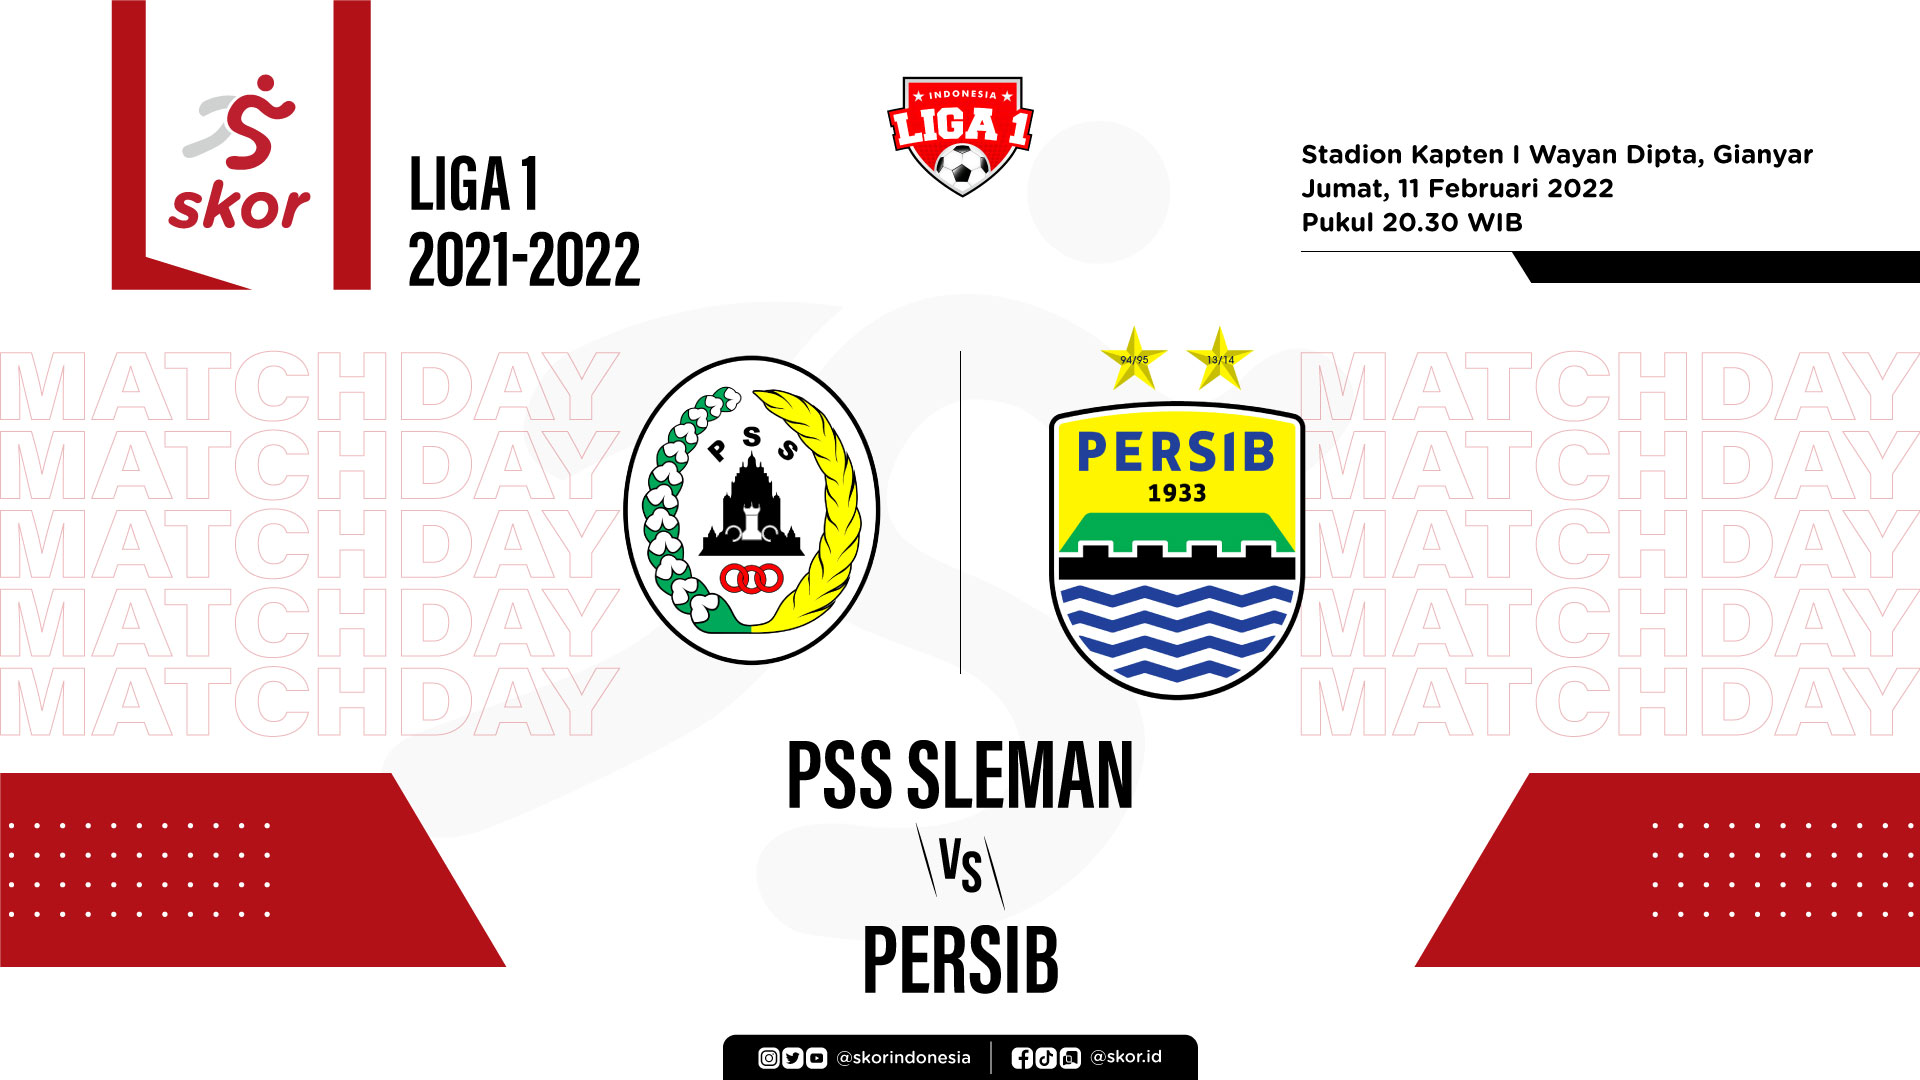 PSS Sleman vs Persib Bandung: Prediksi dan Link Live Streaming